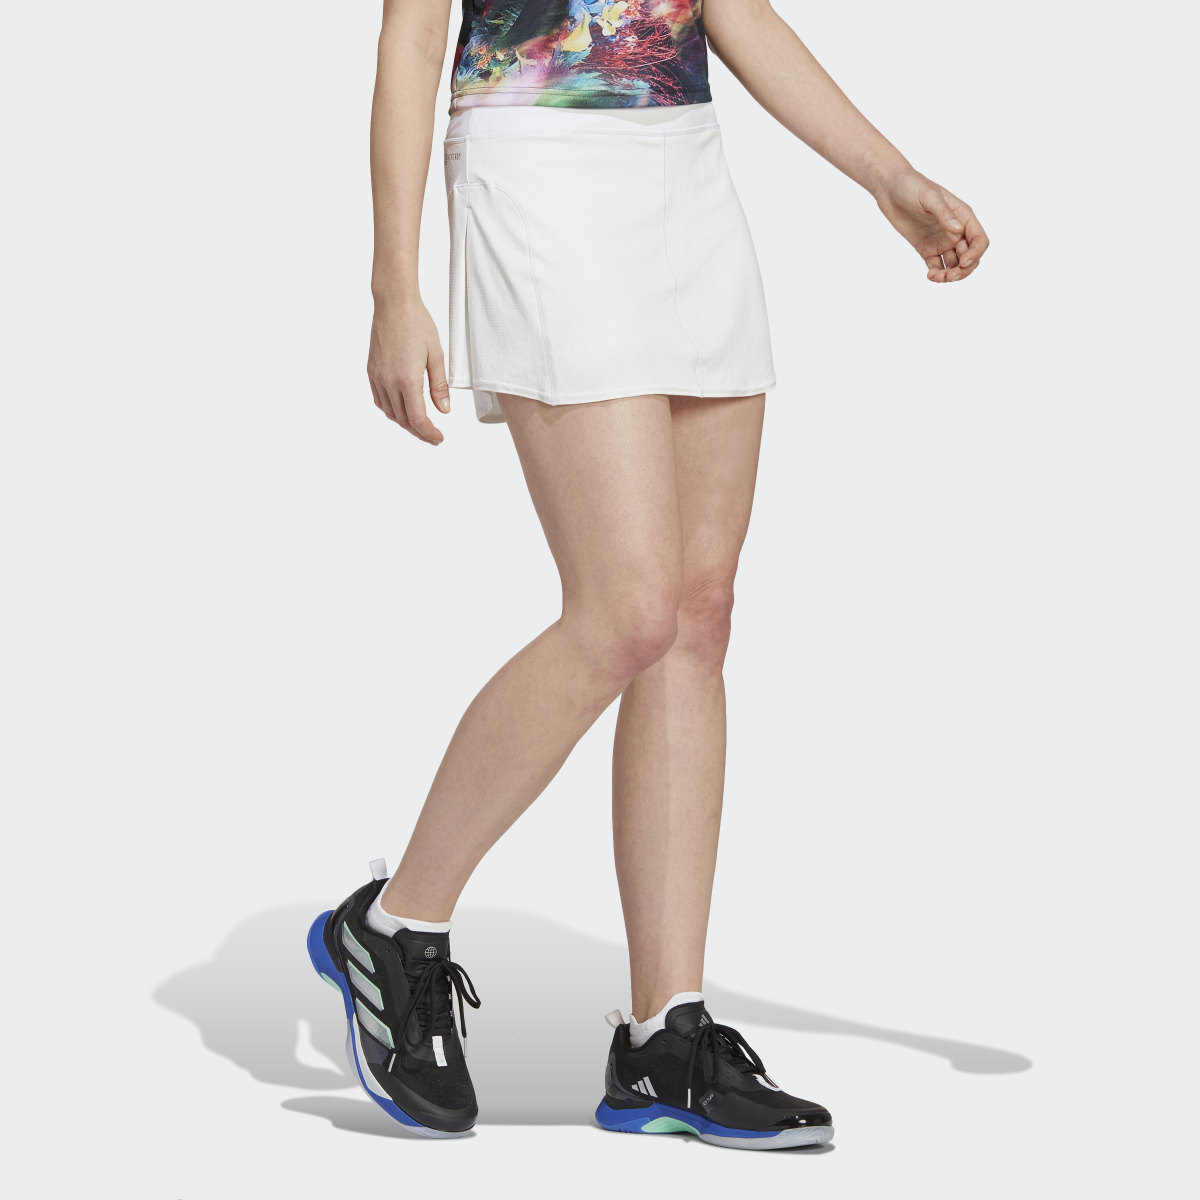 Adidas Tennis Match Skirt. 7